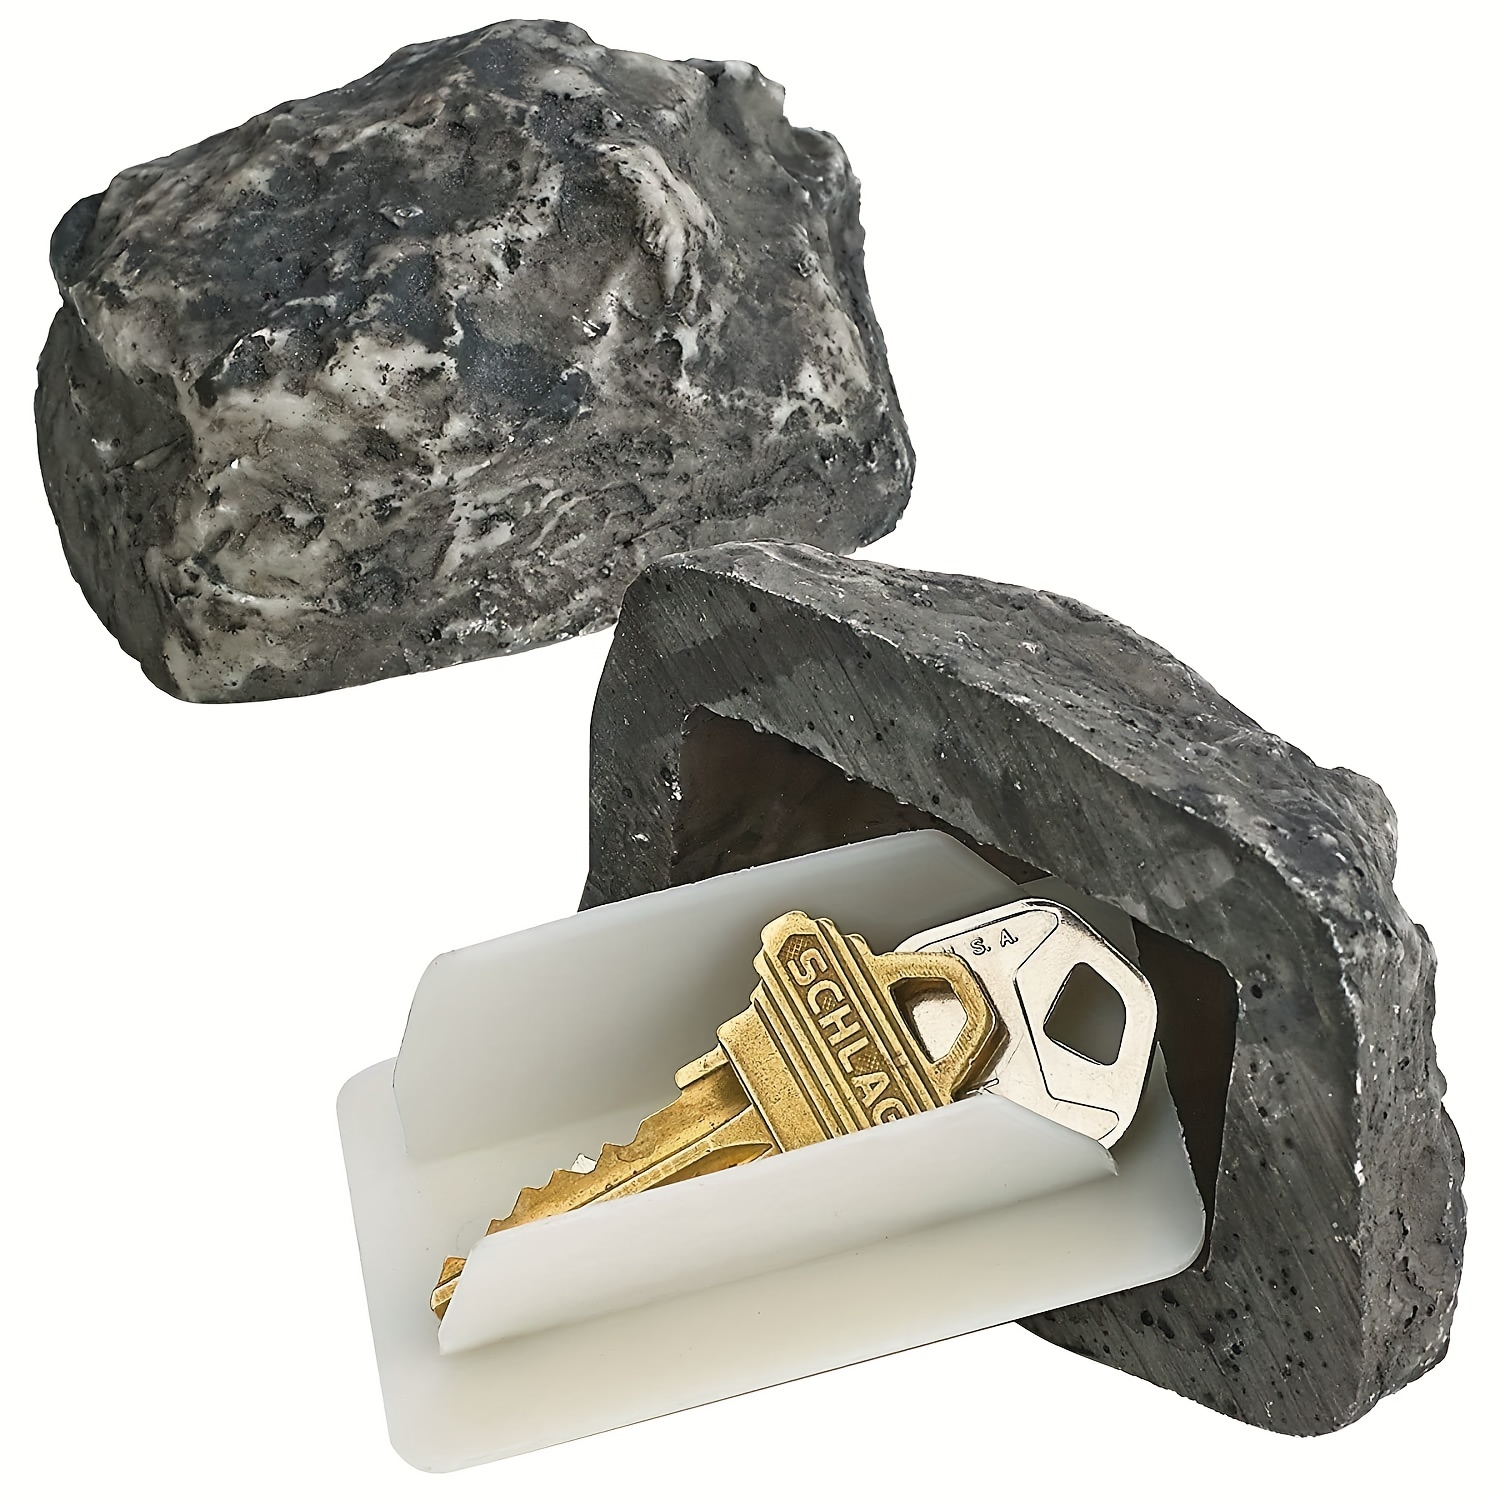 Buy Fake Rock Key online